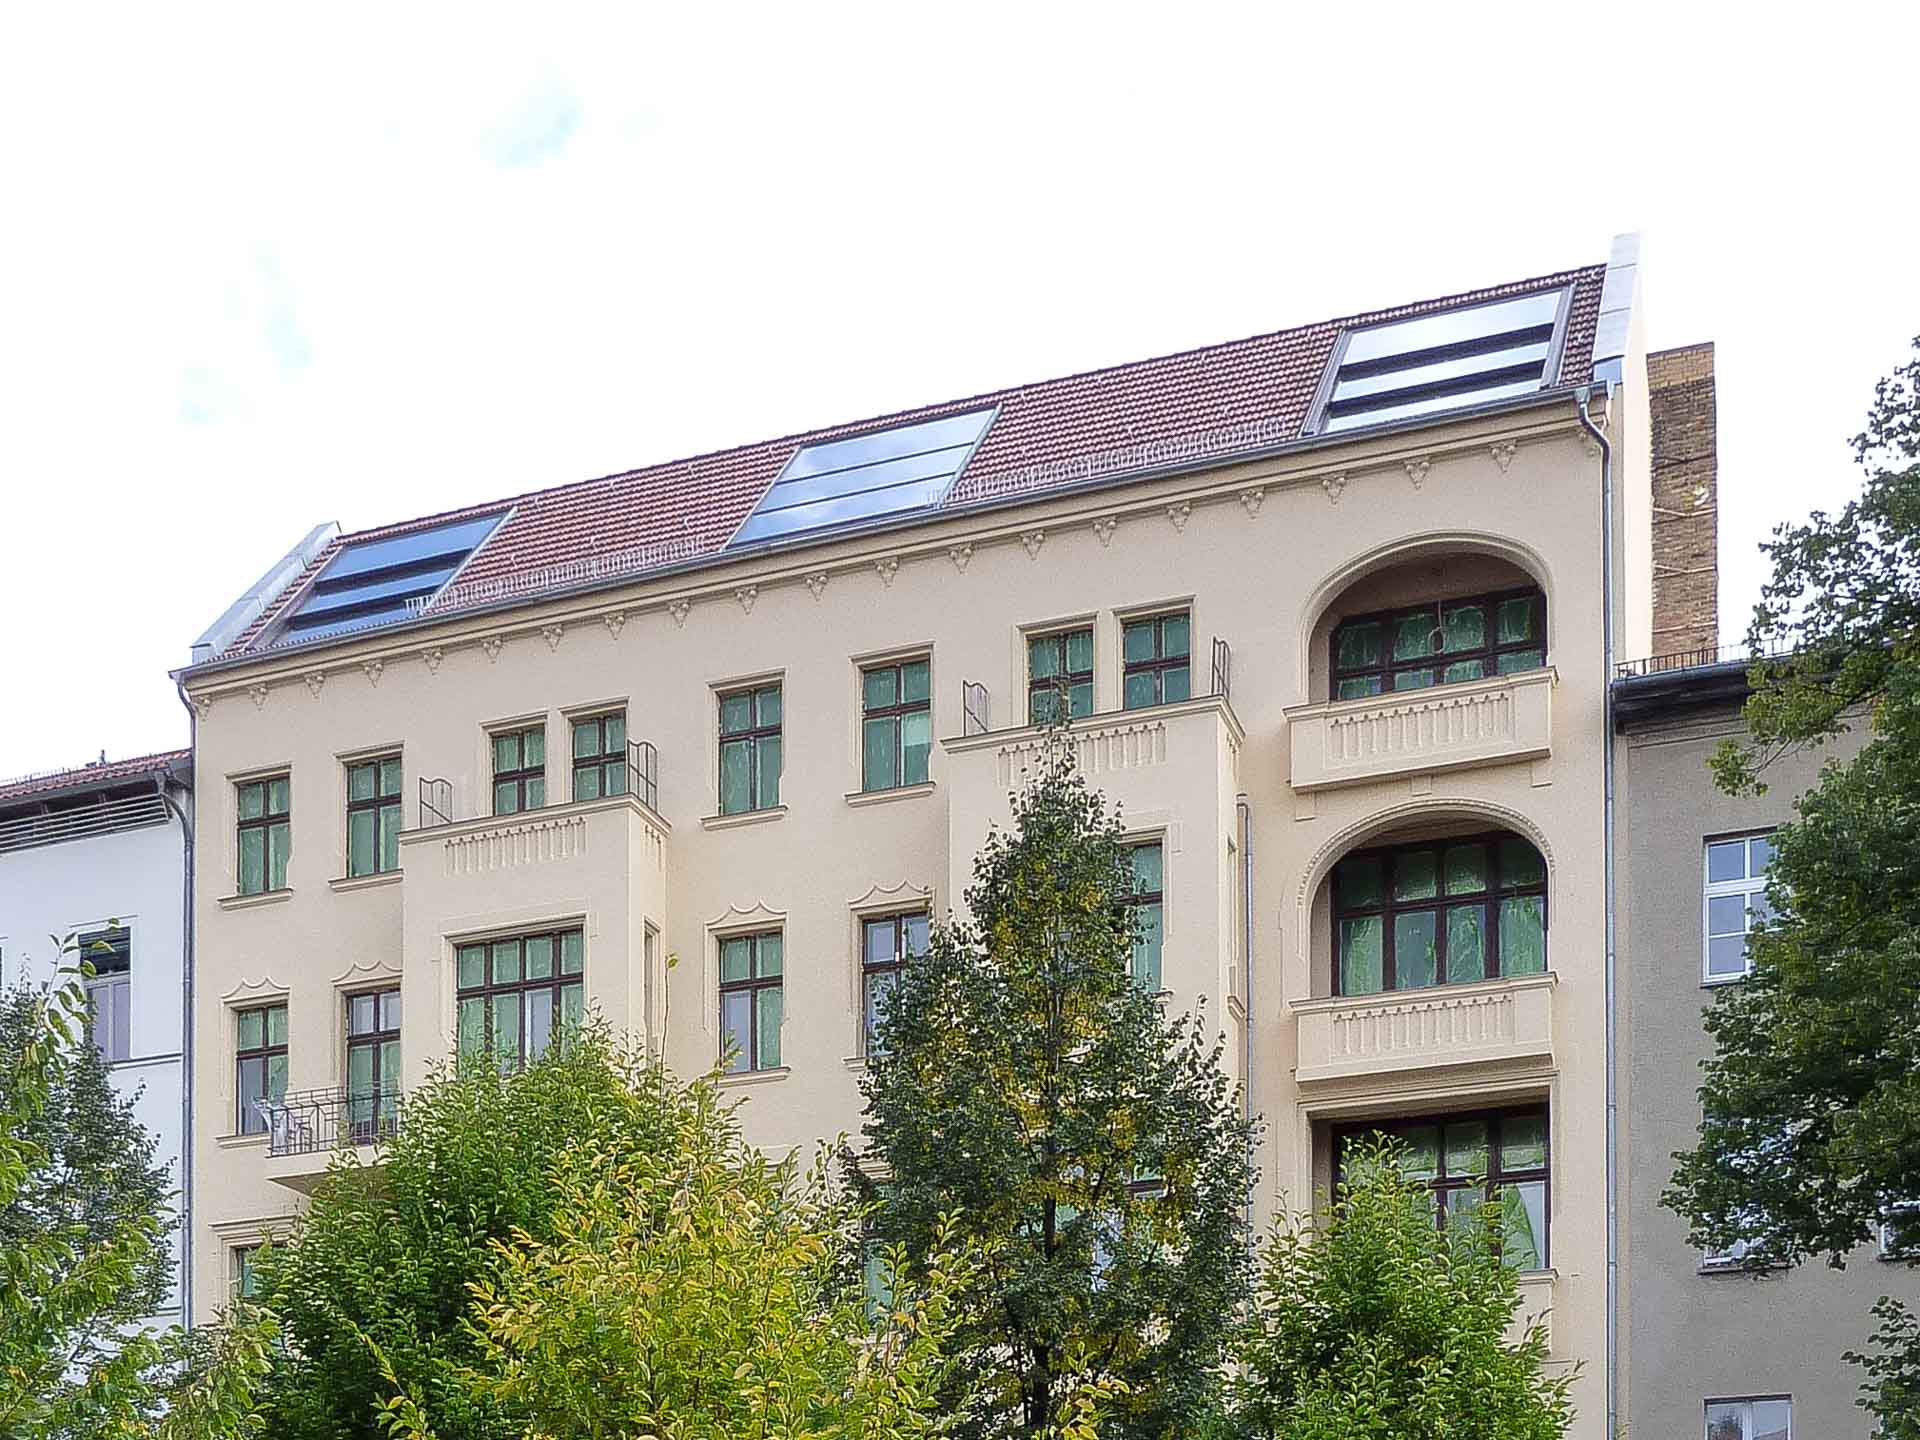 OpenAir Dachschiebefenster und Lichtdach in Berlin (Objekt 1126).